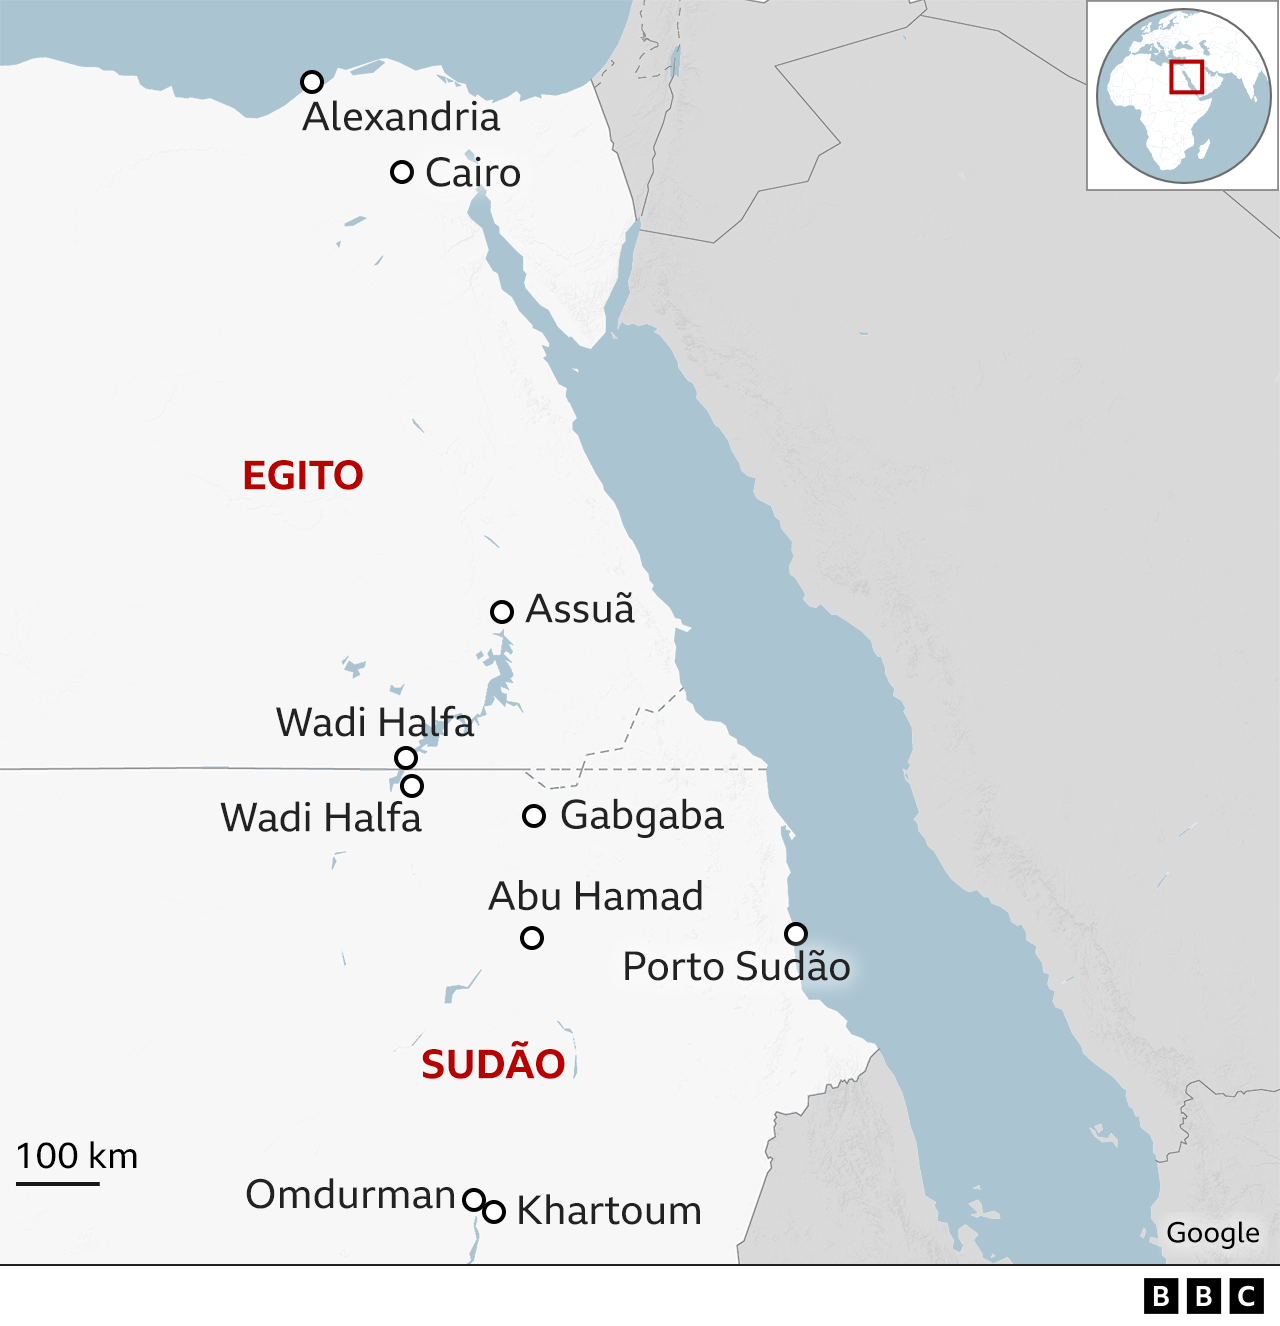 Mapa do Sudão e do Sul do Egito